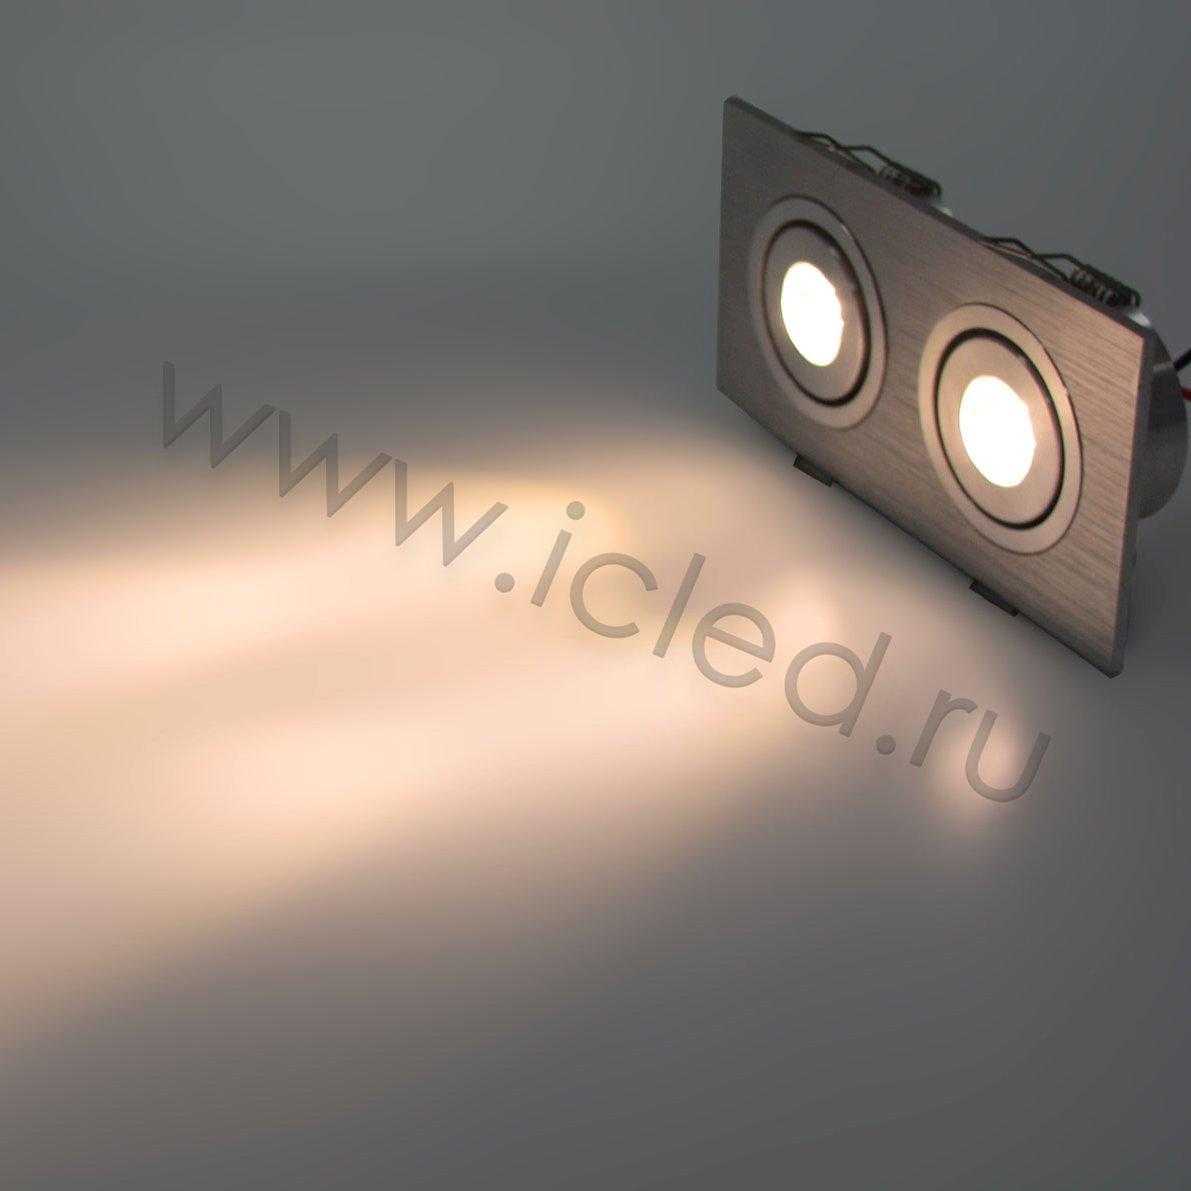 Светодиодный светильник точечный RW (2W, Warm White)